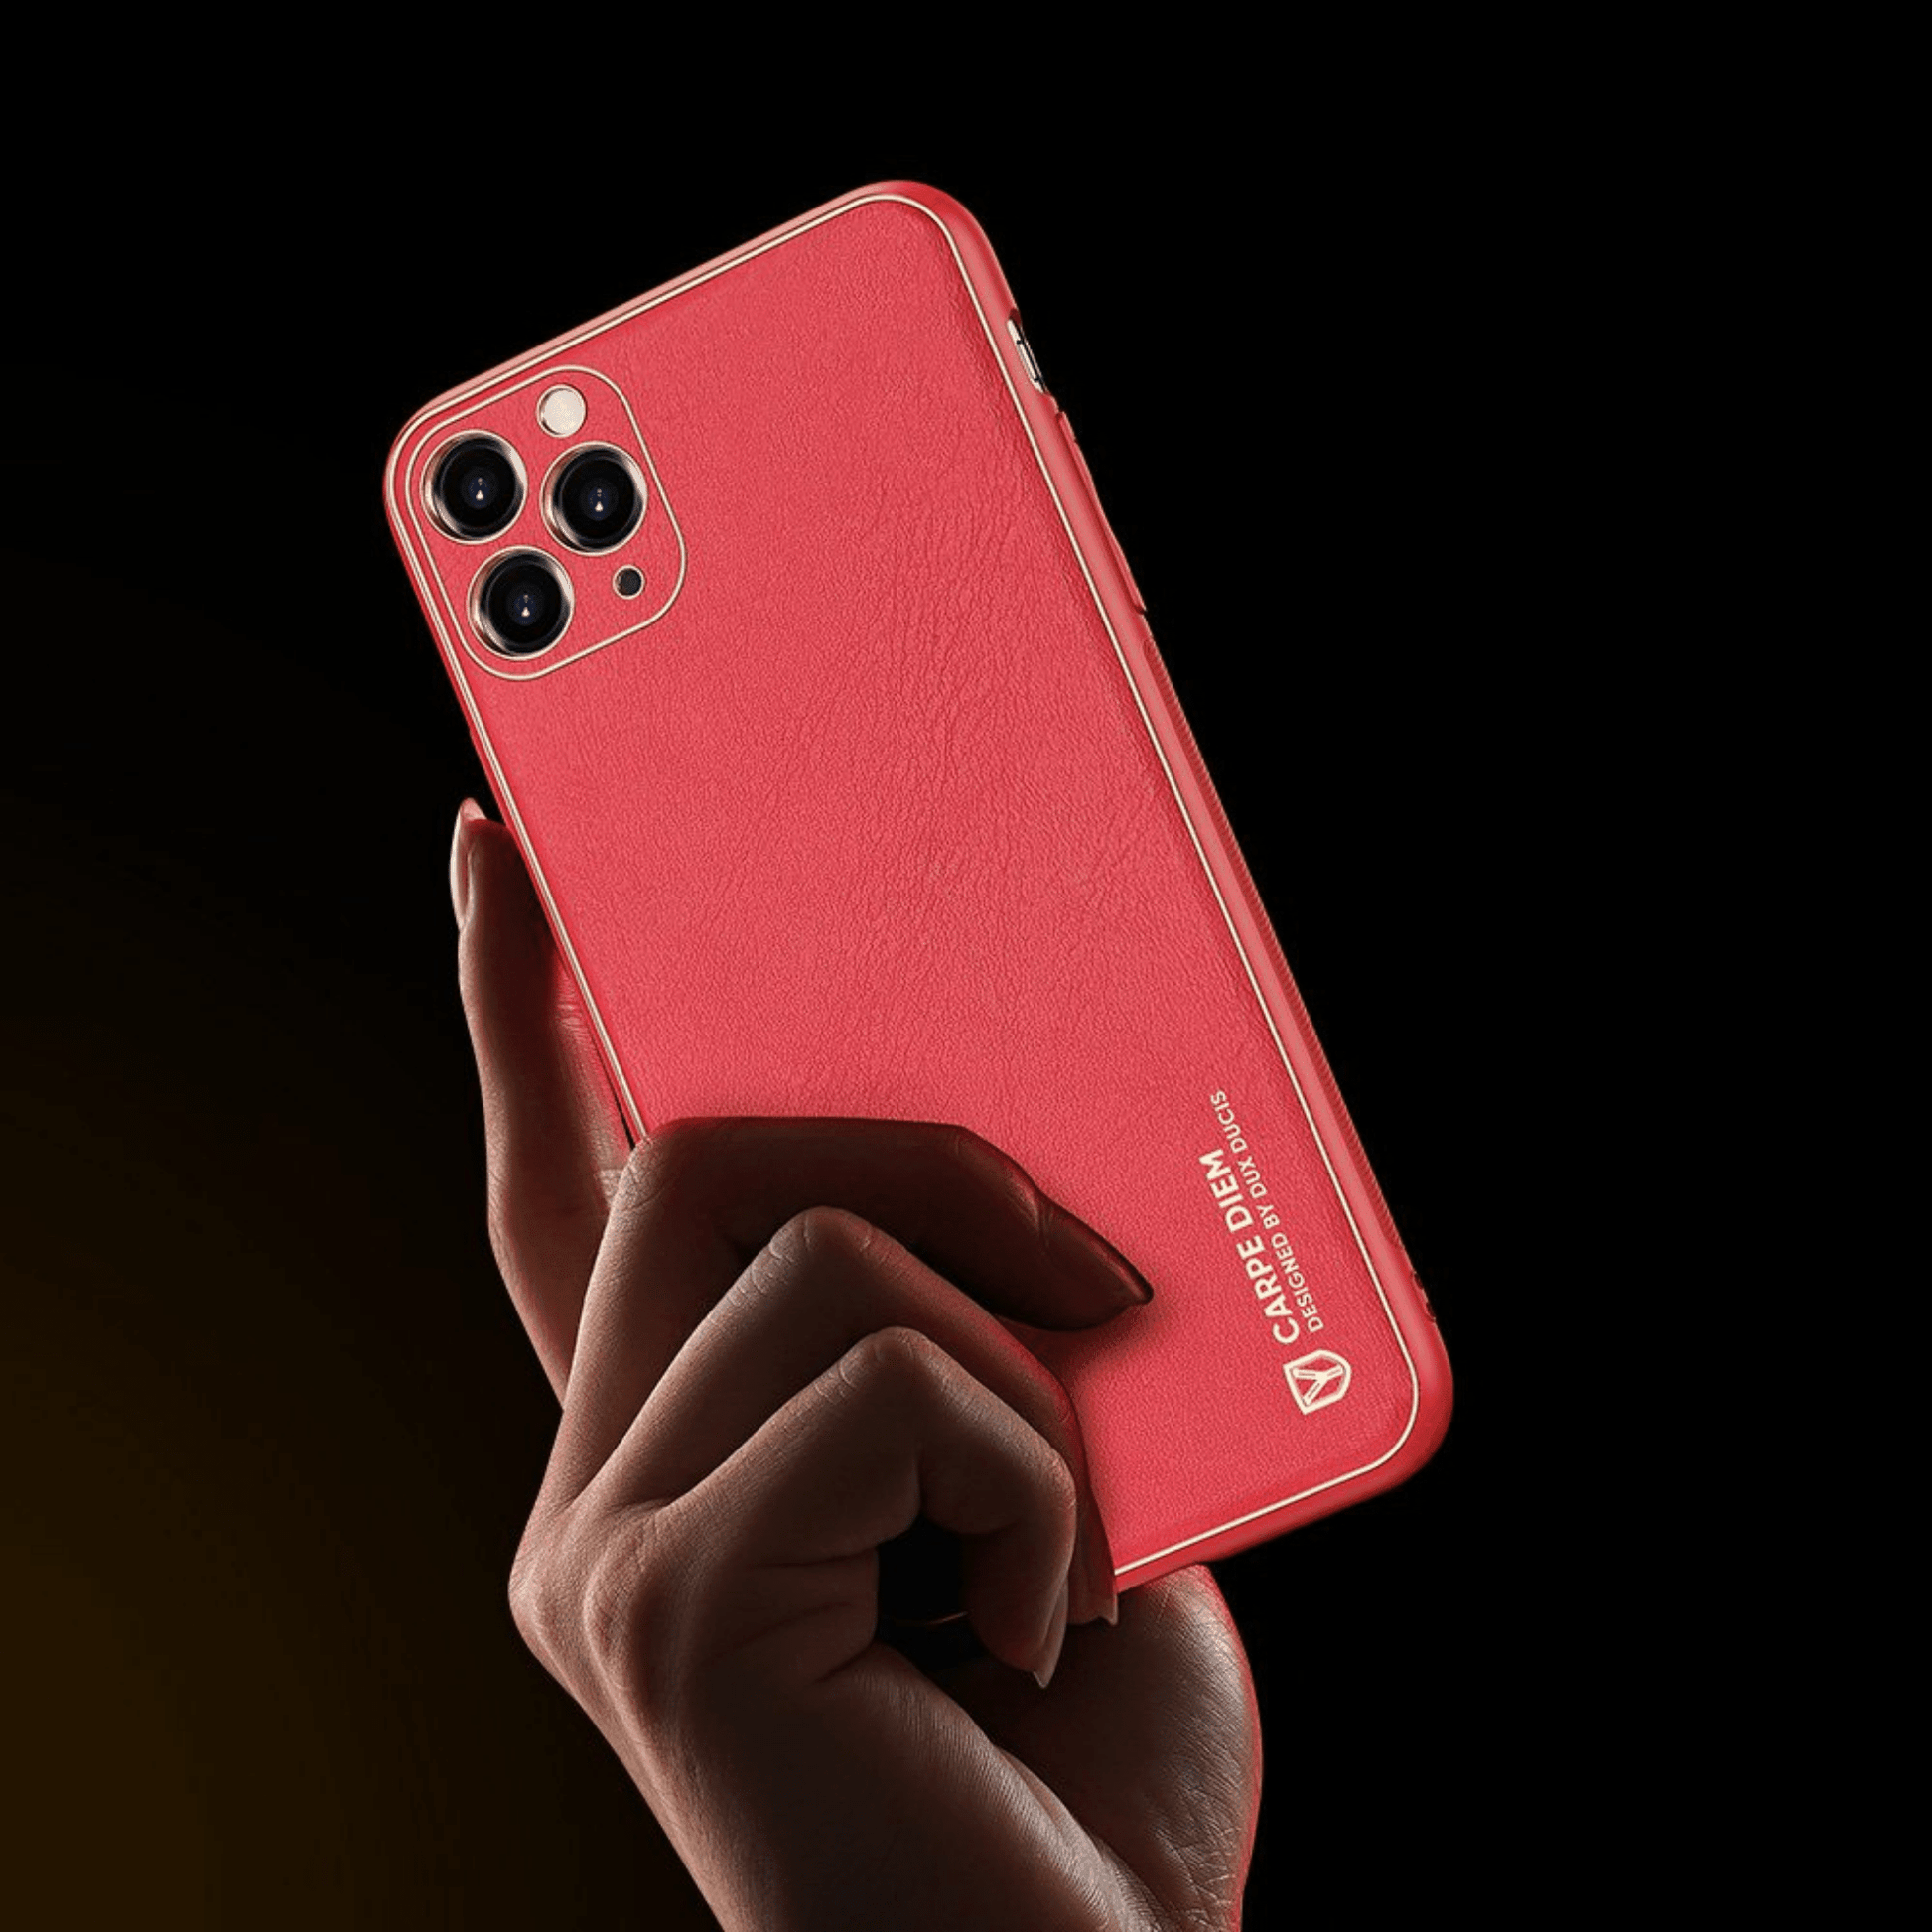 Dux Ducis - iPhone 11 Pro Back Cover Yolo Series PU-Leder Schutzhülle - Rot